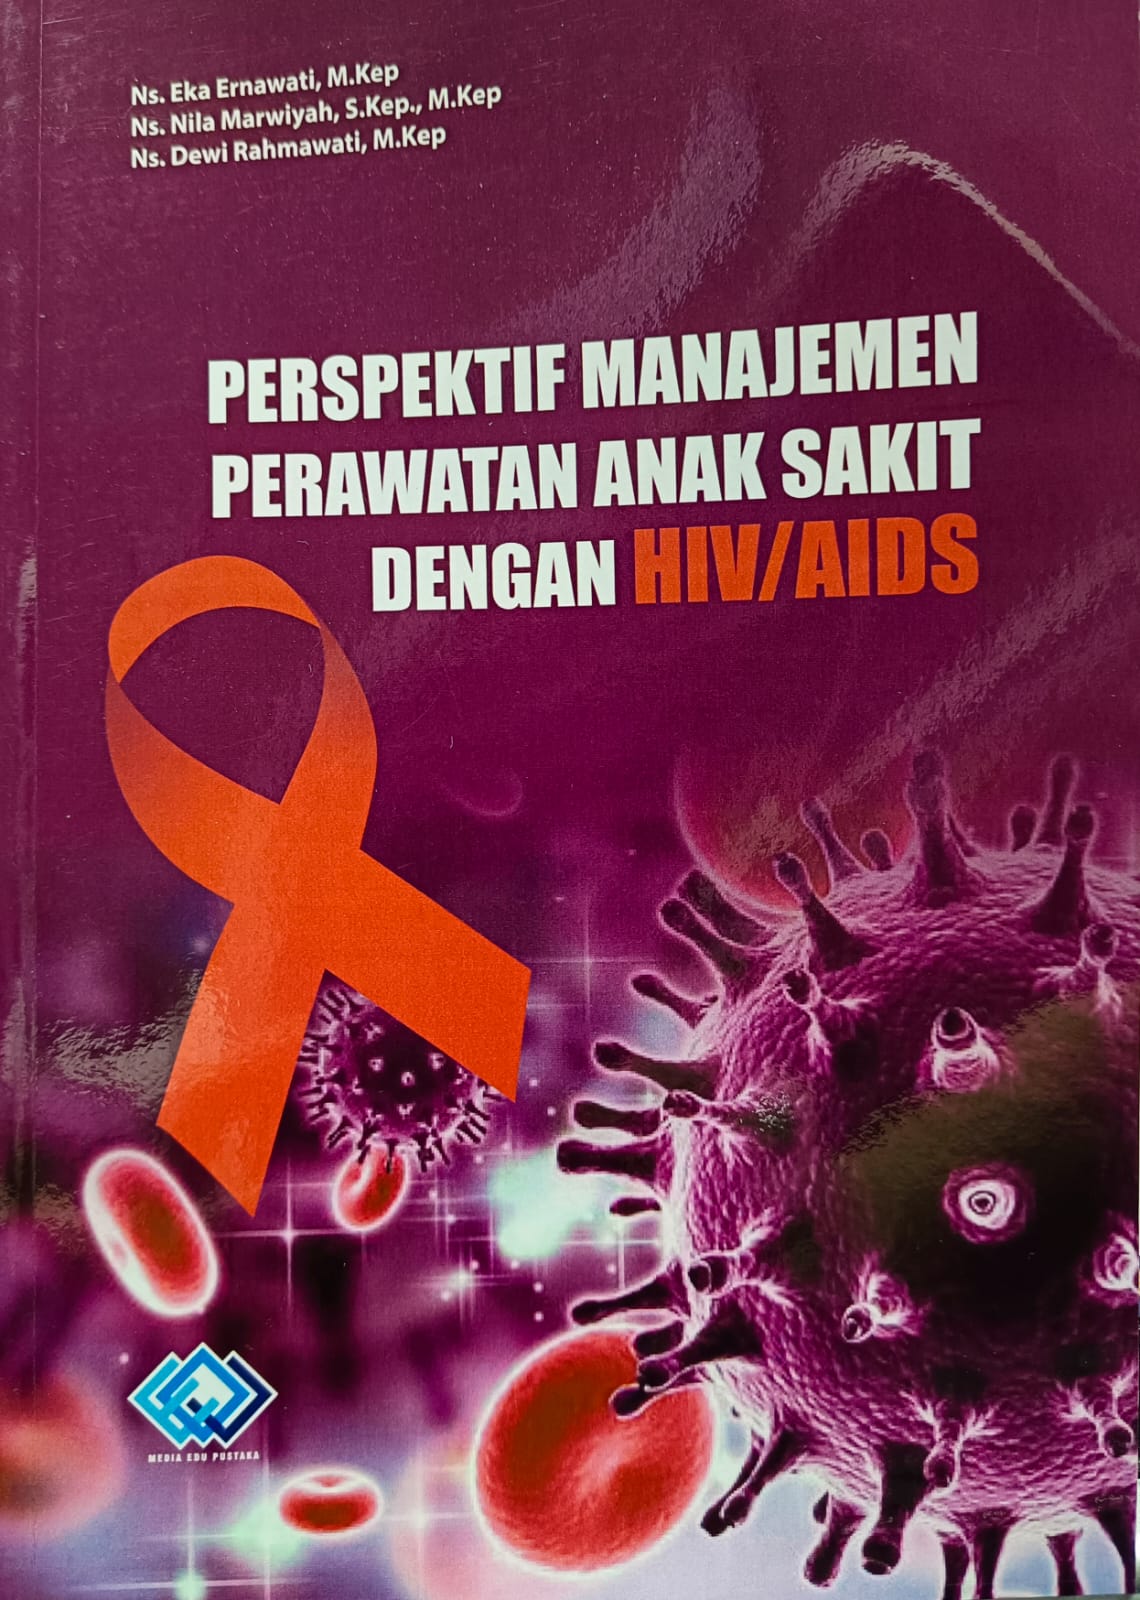 Perspektif manajemen perawatan anak sakit dengan HIV/AIDS